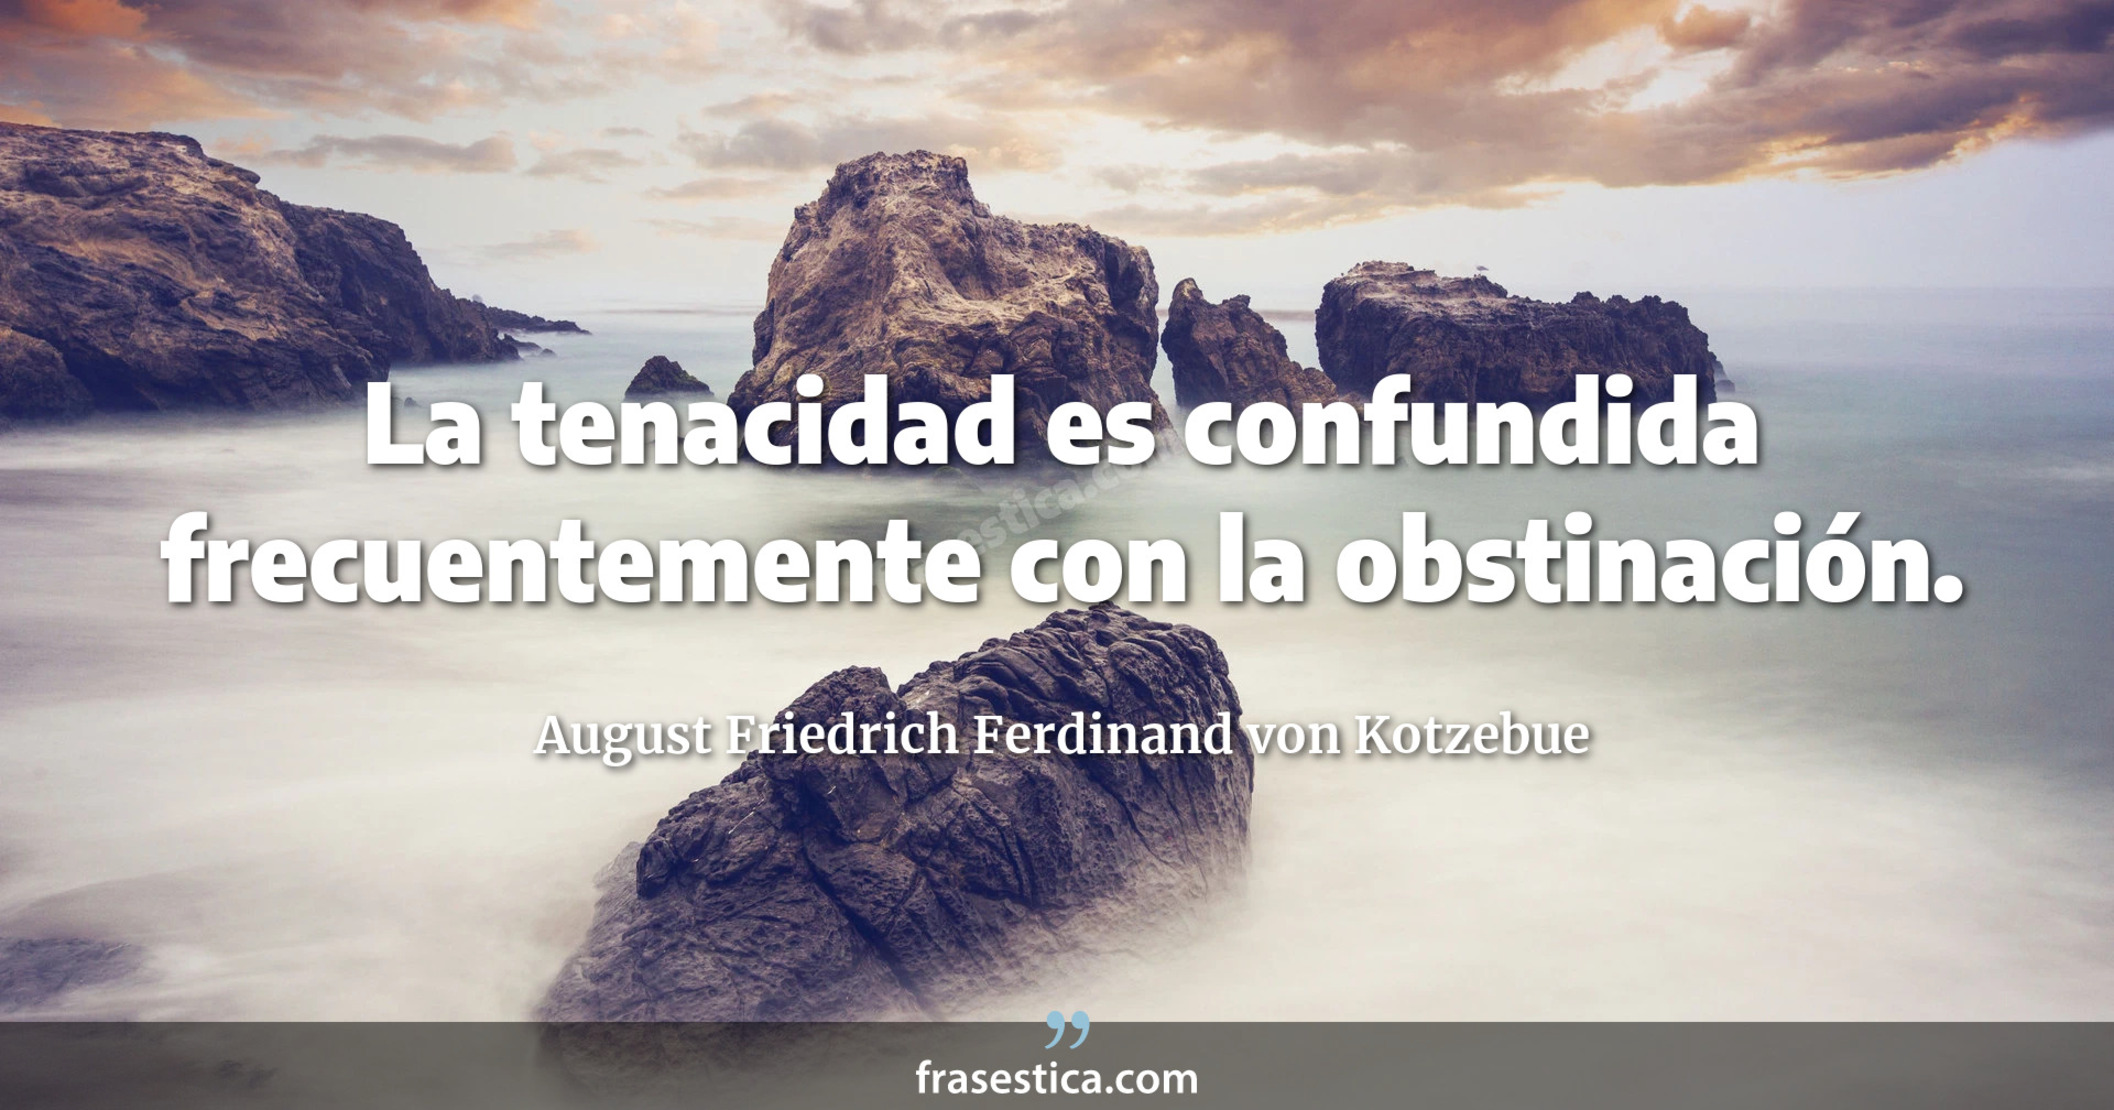 La tenacidad es confundida frecuentemente con la obstinación. - August Friedrich Ferdinand von Kotzebue